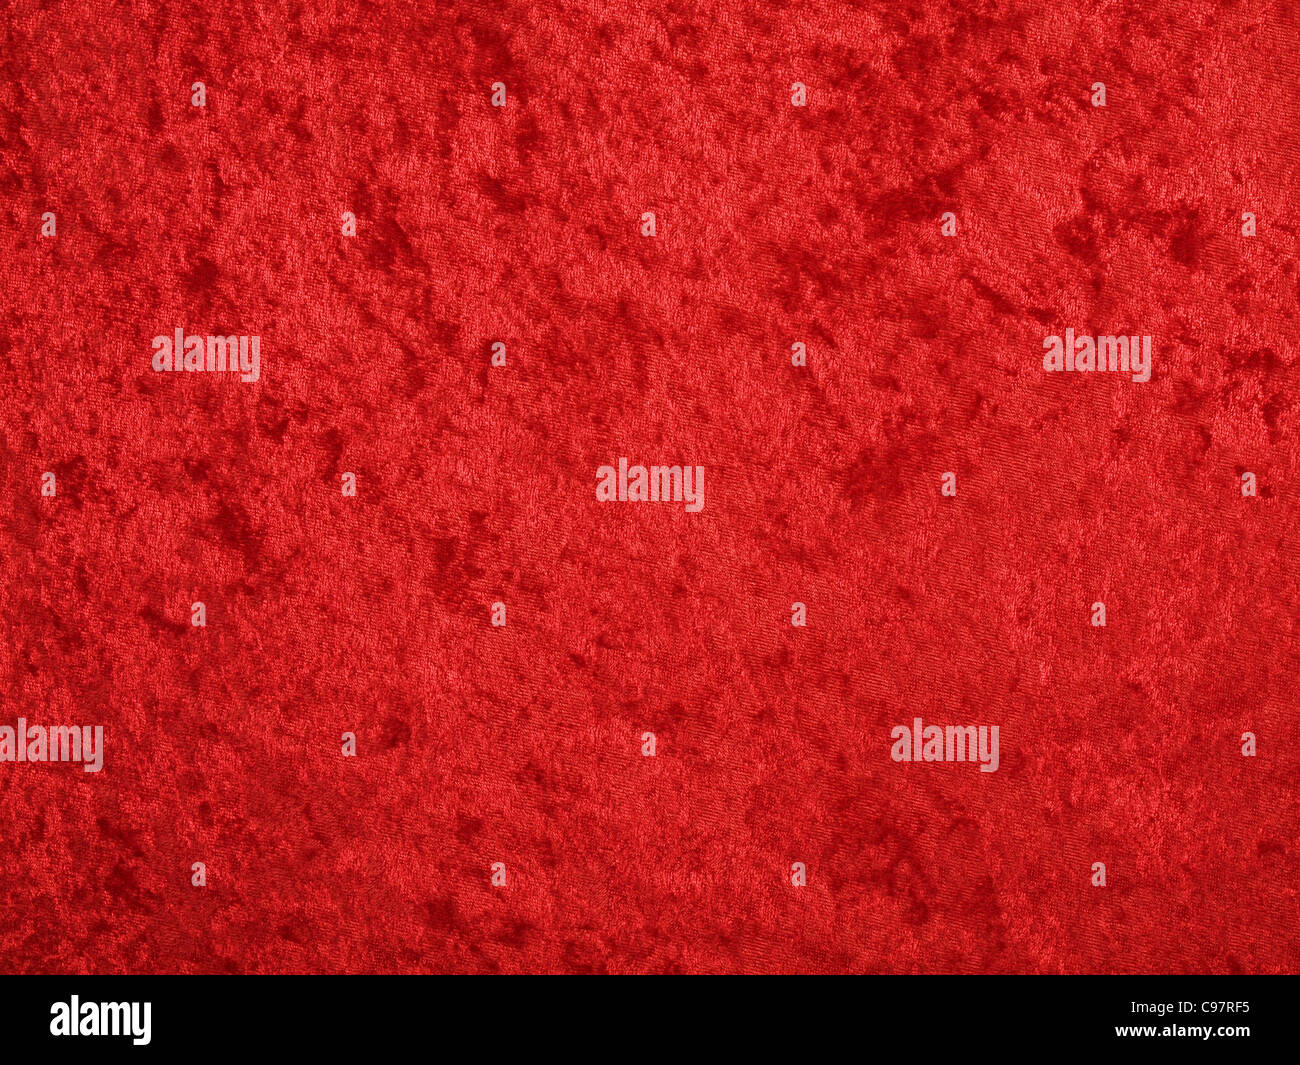 red velvet background Stock Photo